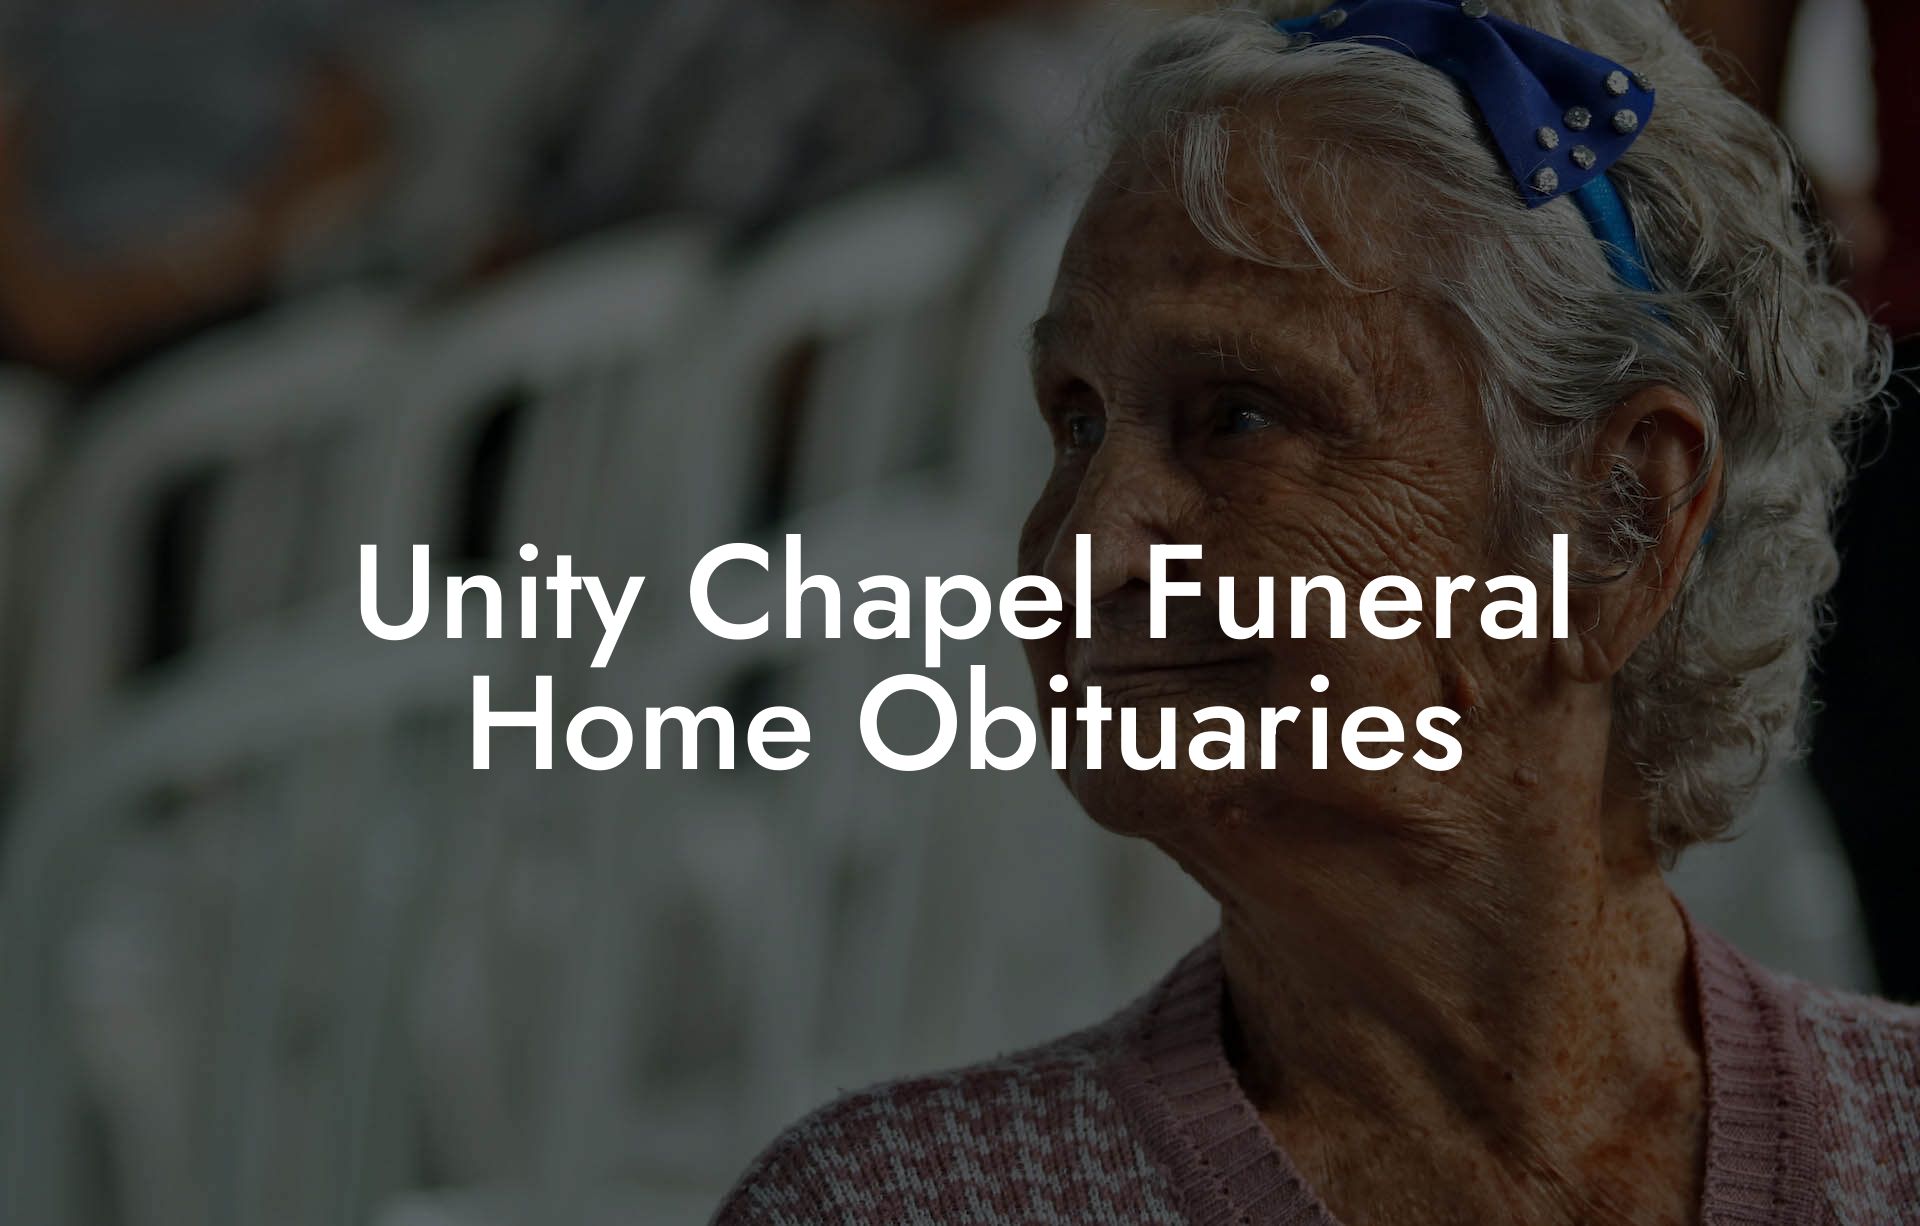 Unity Chapel Funeral Home Obituaries